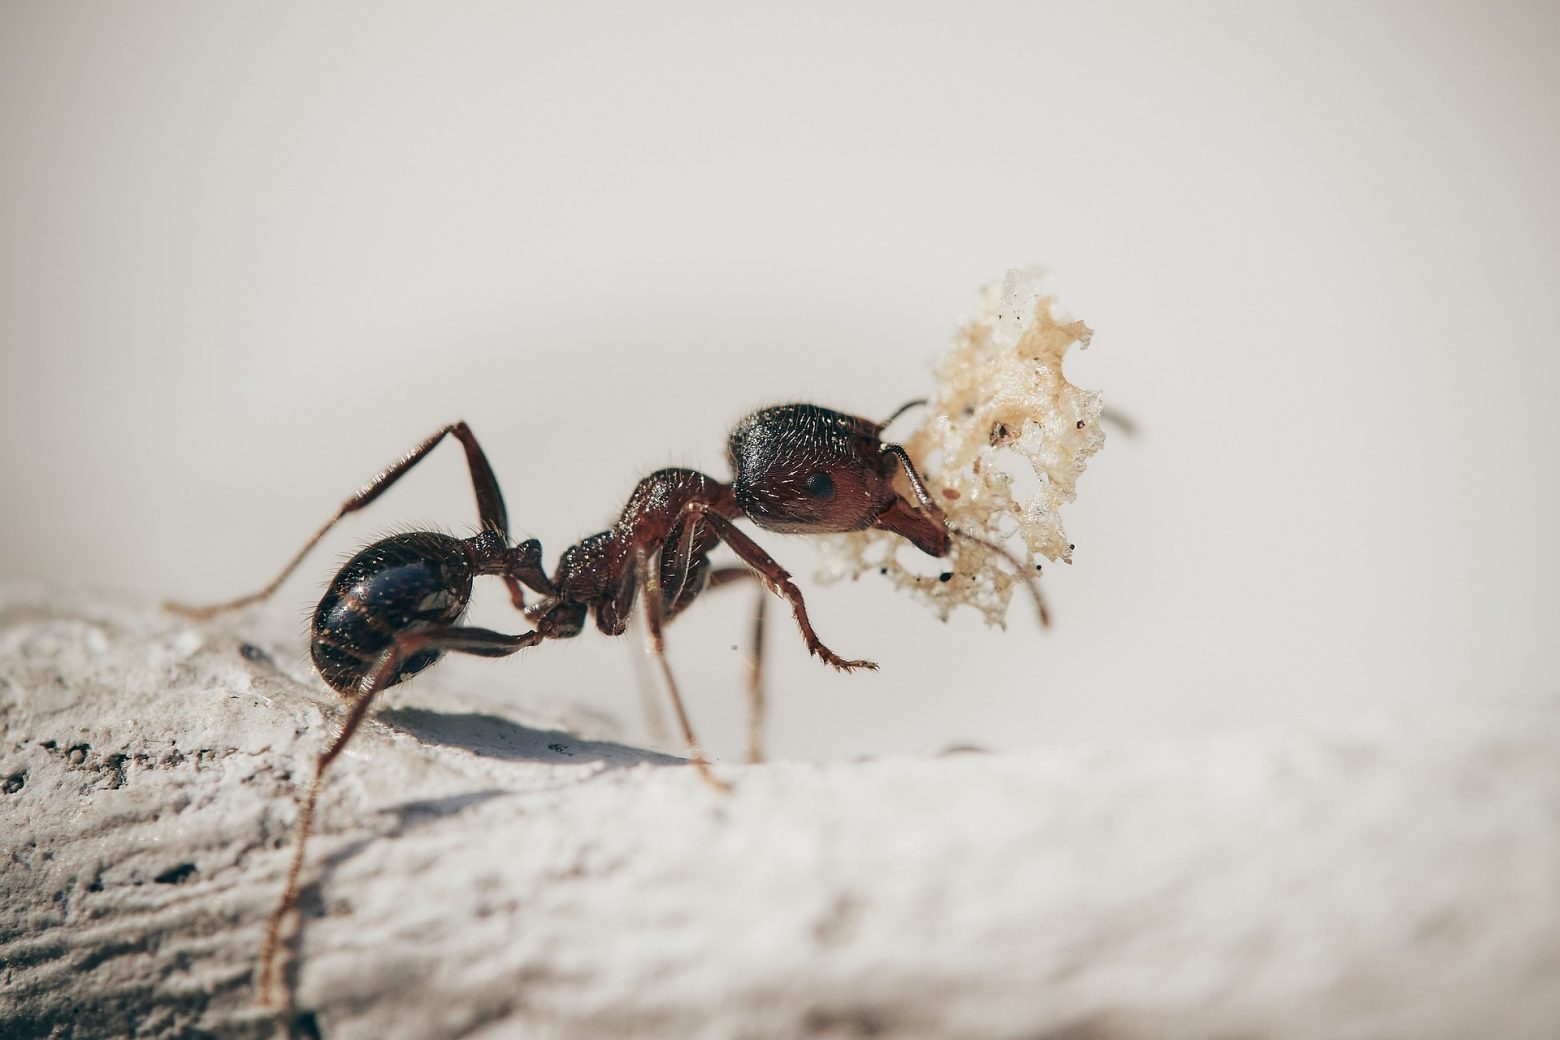 Σαν να βγήκε από θρίλερ: Η φωτογραφία ενός μυρμηγκιού «κόβει» την ανάσα